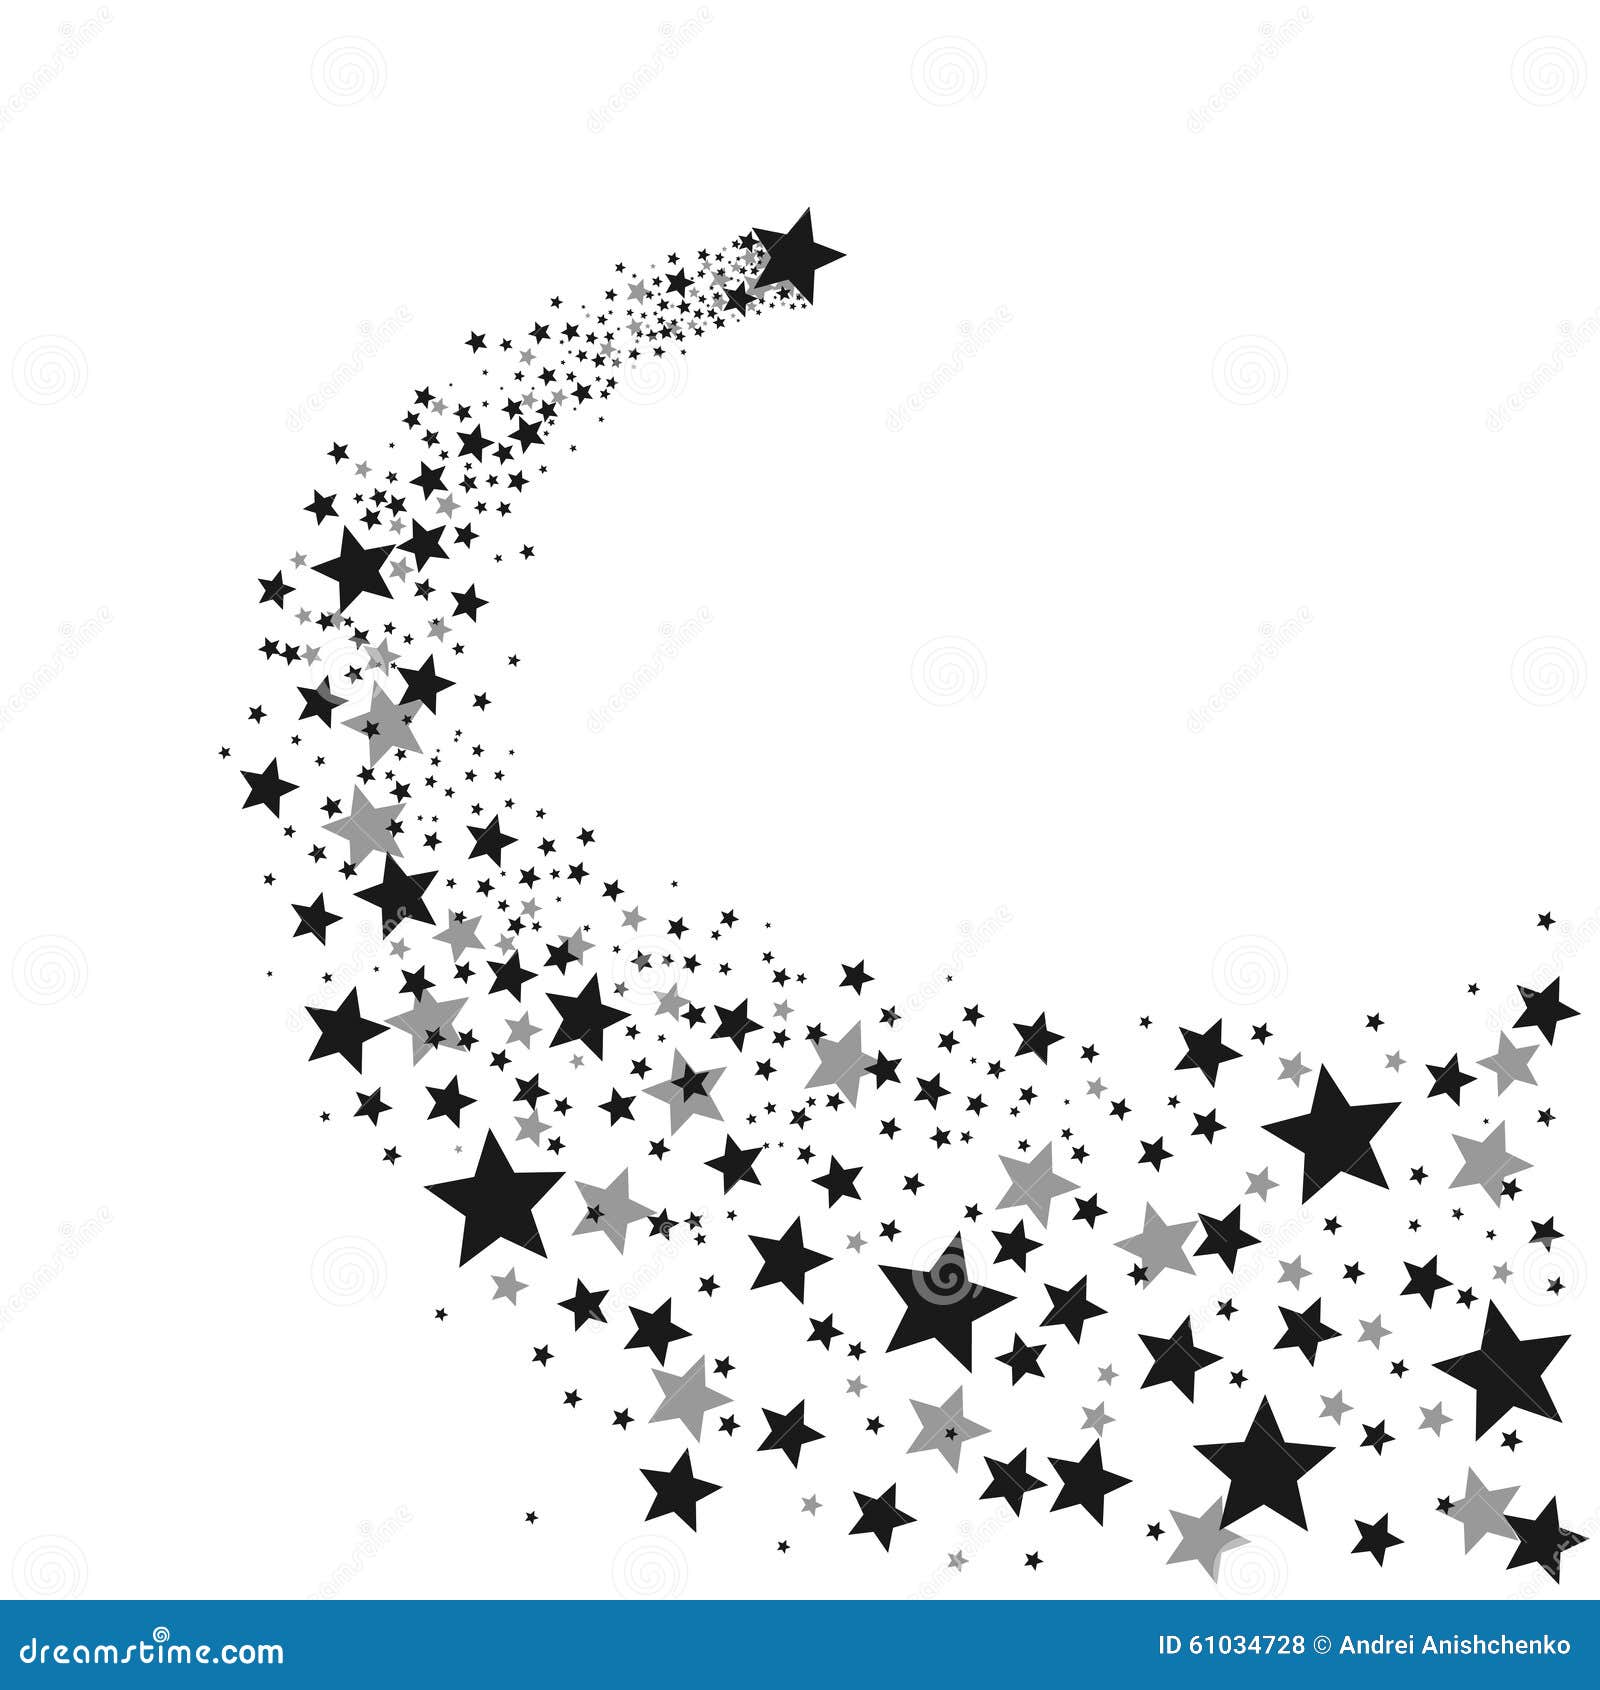 Rising star stock vector. Illustration of rising, bright - 61029810